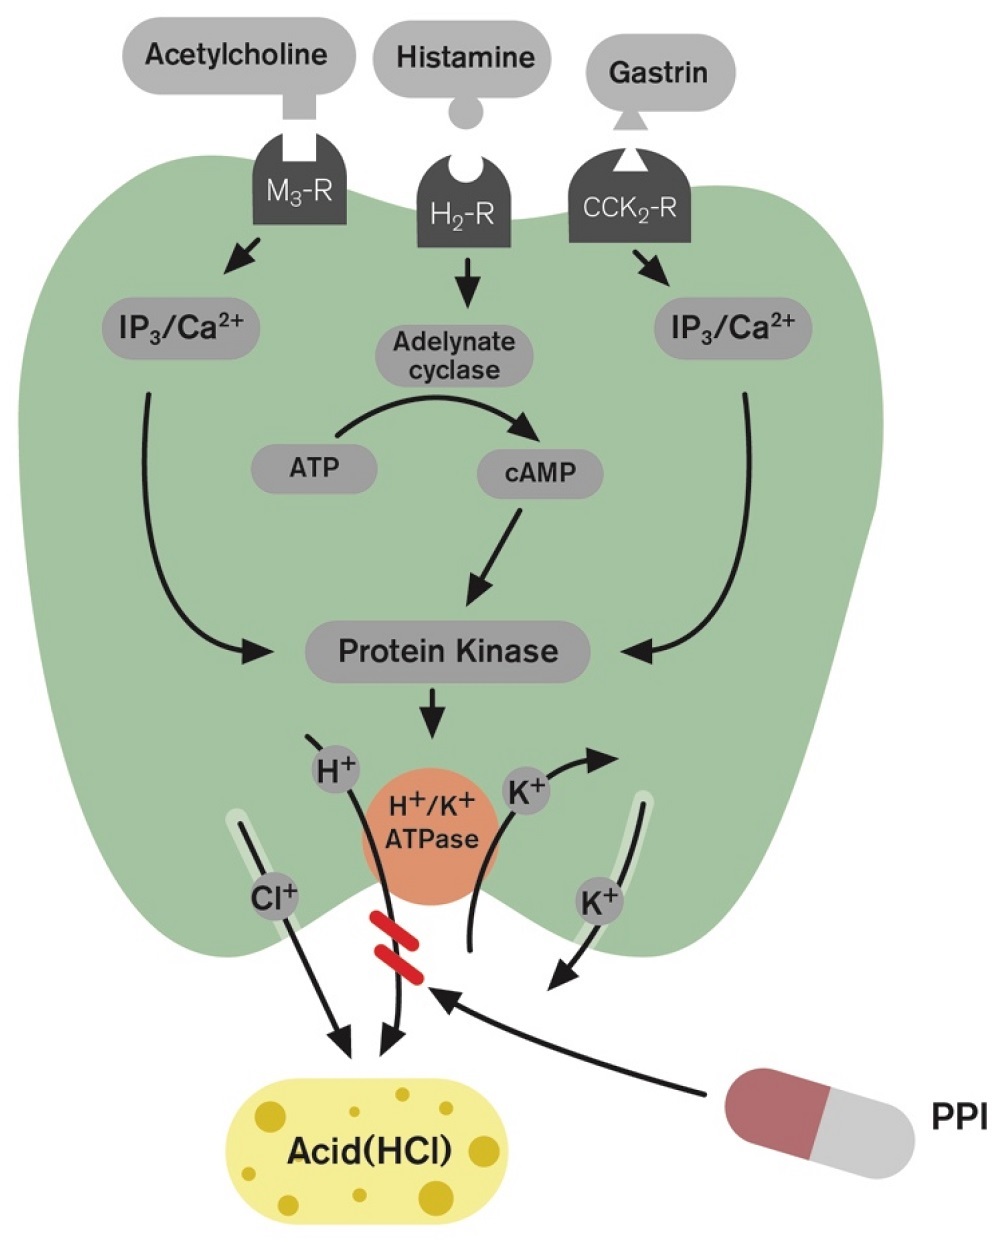 Parietální buňky obsahující H + /K + ATPázu neboli „protonové pumpy“ umístěné v kanálku parietální buňky řídí transport kyseliny (H + ) do žaludku. Hlavními stimulanty sekrece kyseliny (Hcl) na úrovni parietálních buněk jsou histamin, acetylcholin a 